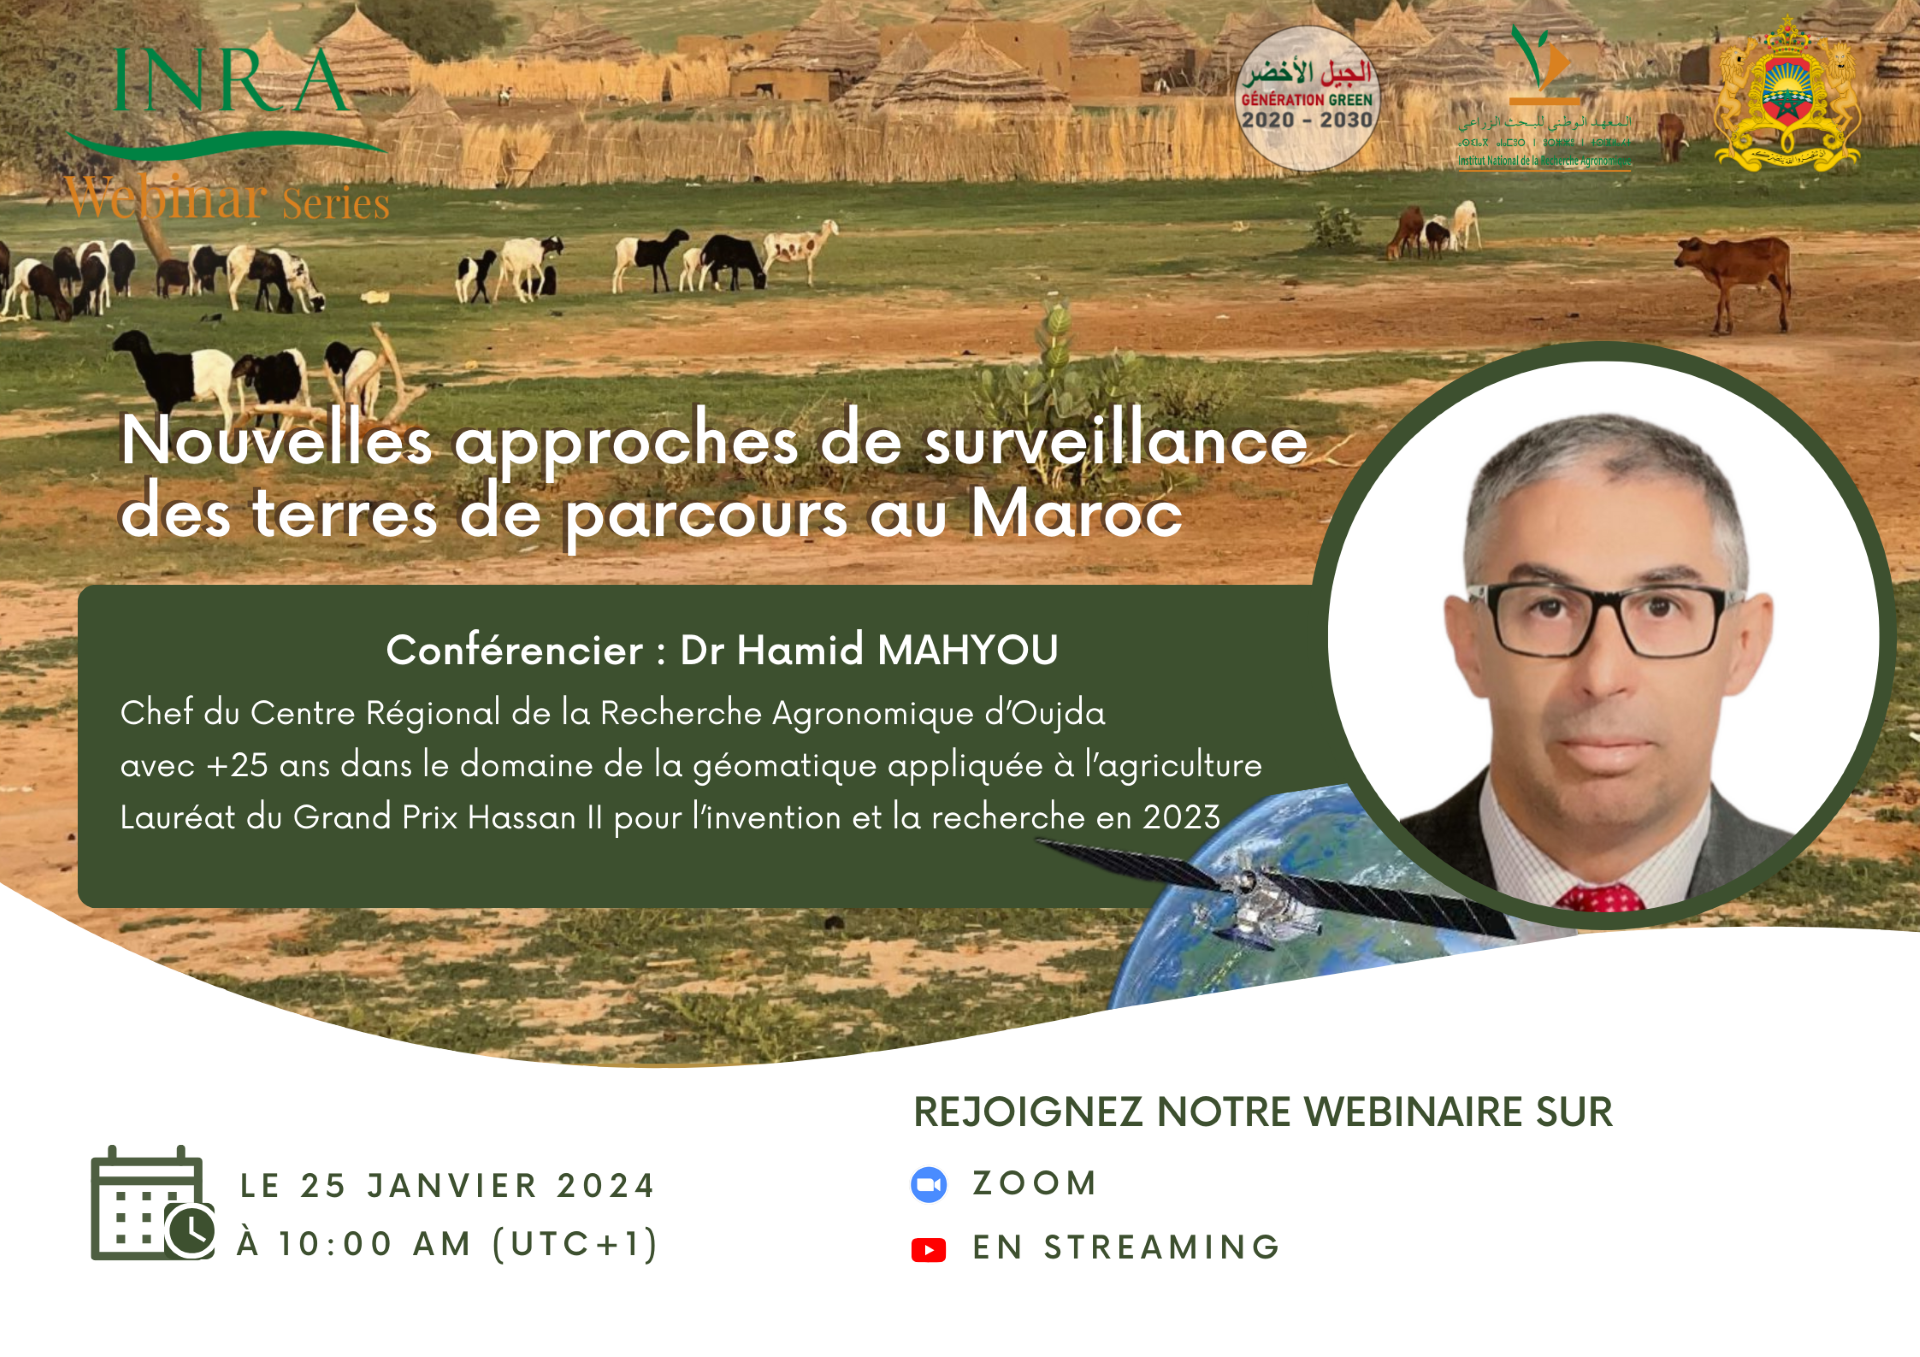 /fr/content/les-nouvelles-approches-de-surveillance-des-terres-de-parcours-au-maroc